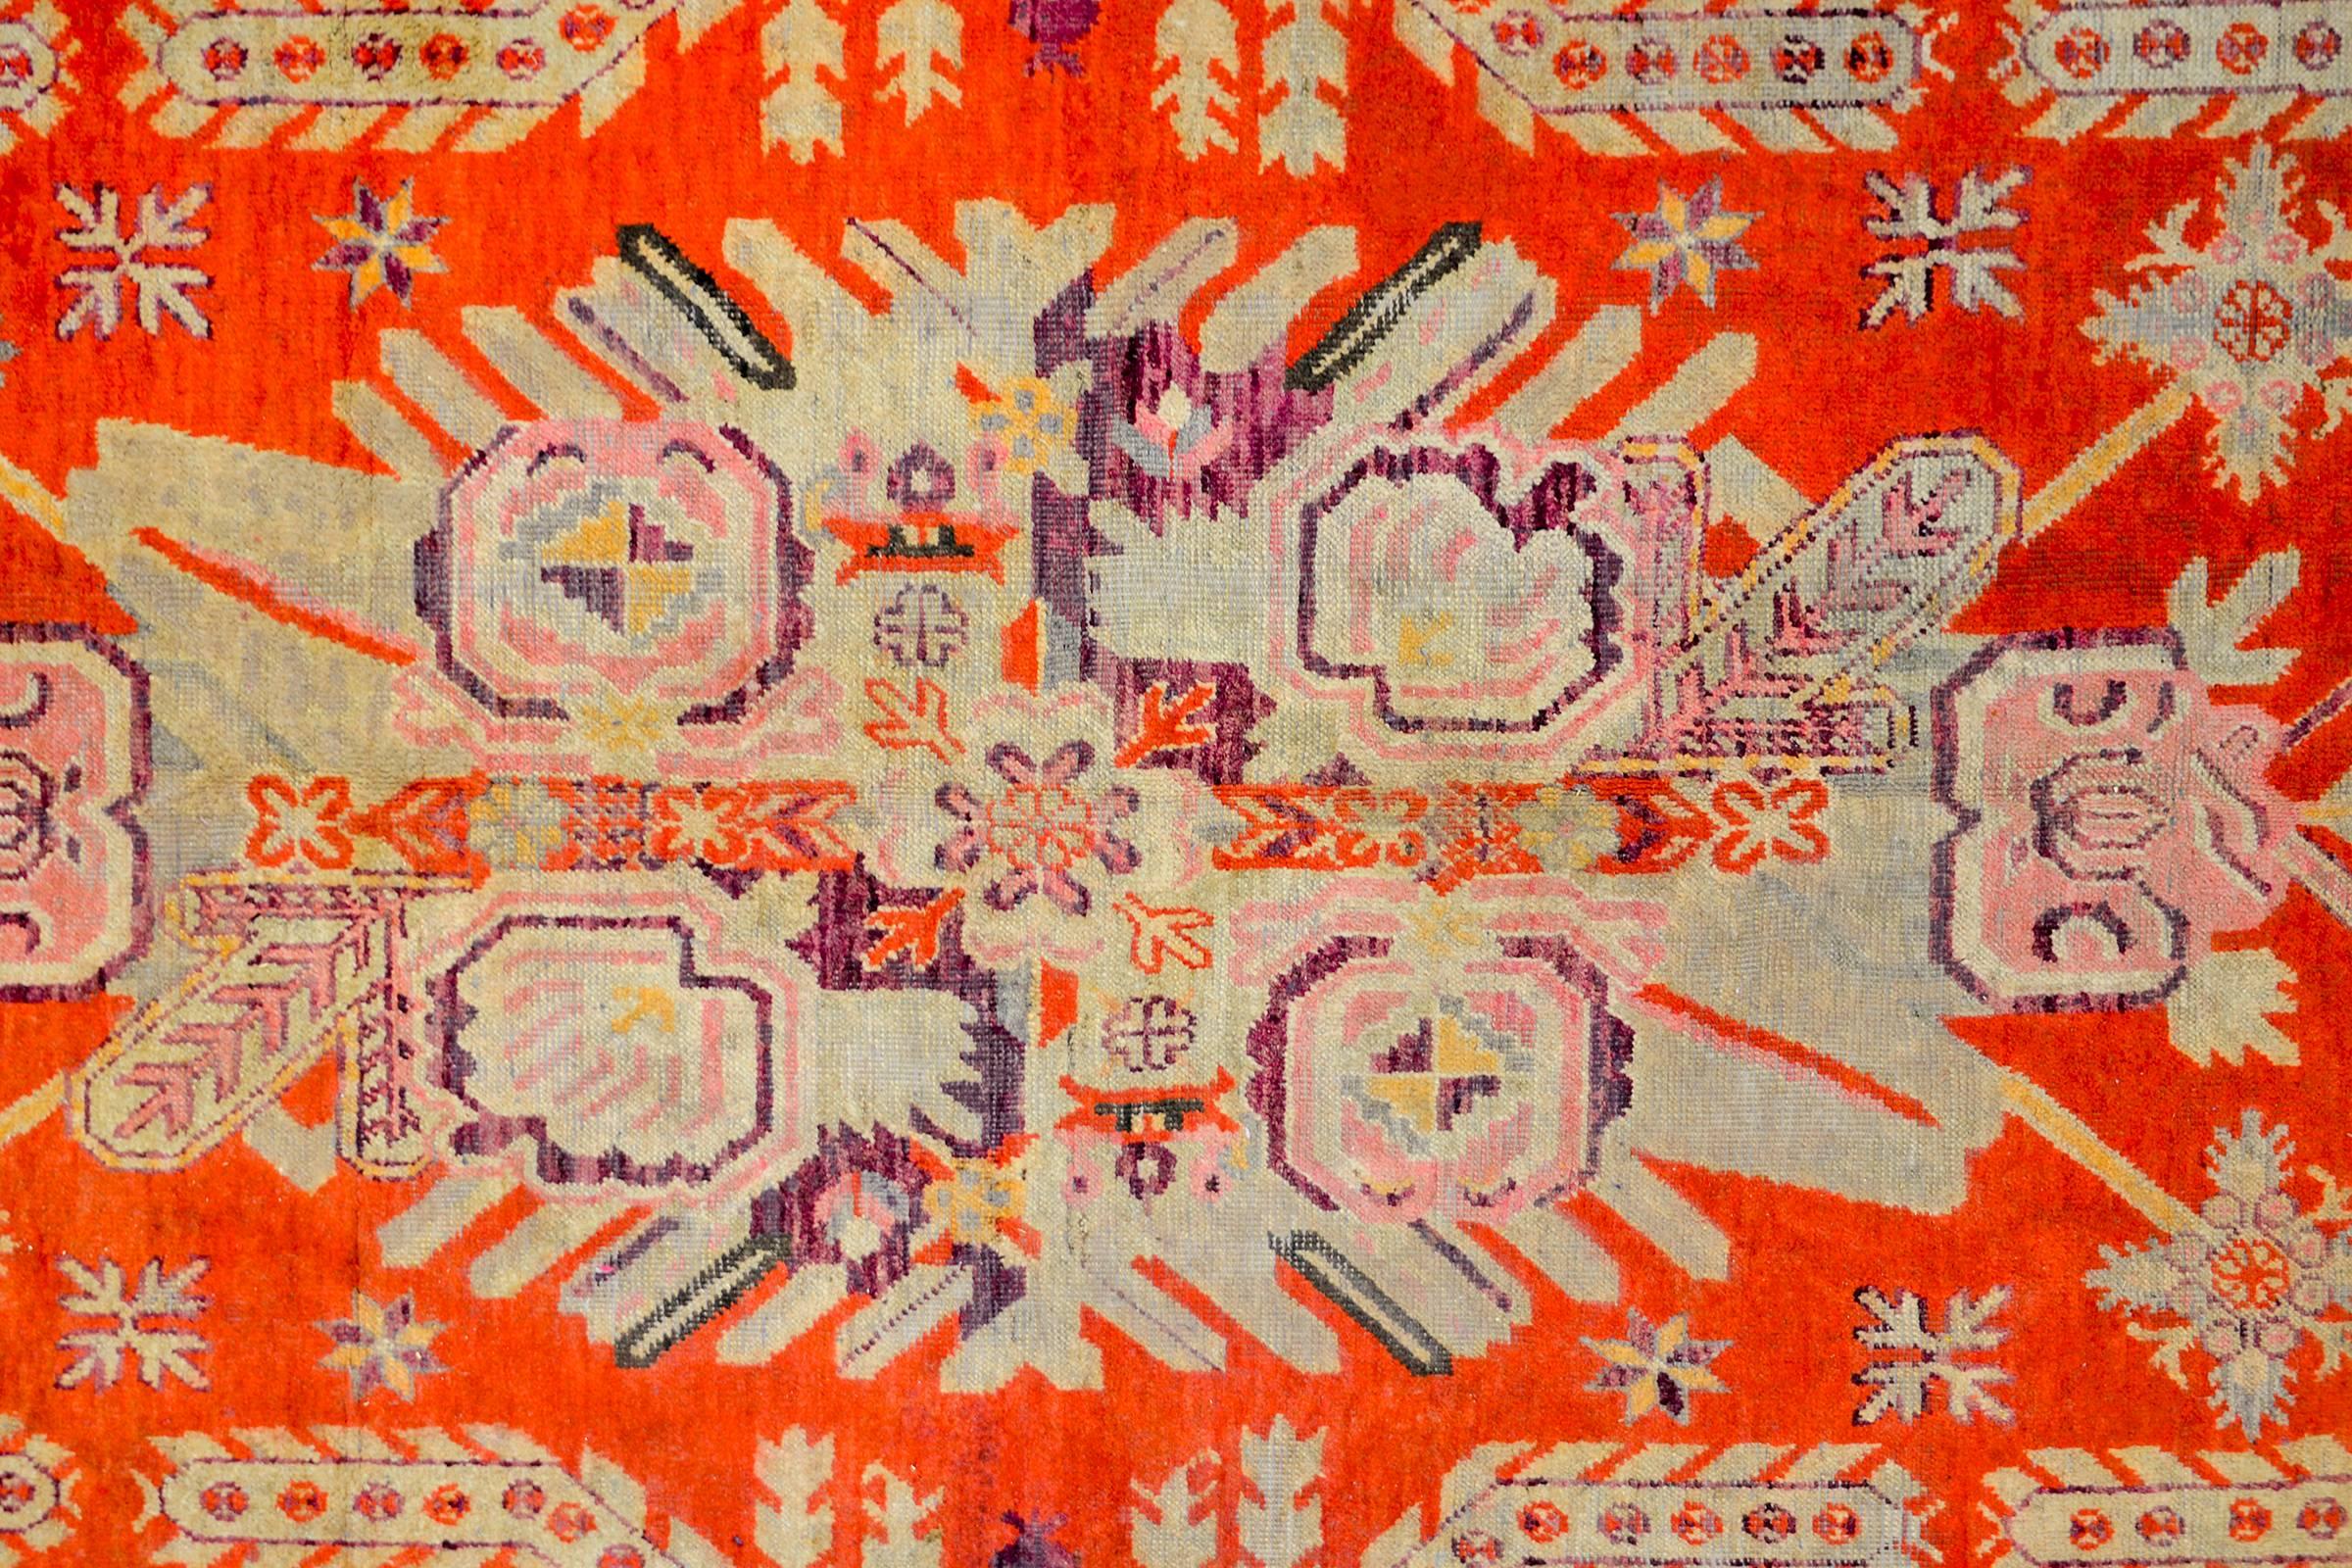 Ein außergewöhnlicher zentralasiatischer Samarghand-Teppich aus dem frühen 20. Jahrhundert von einzigartiger Größe und Musterung mit einem unglaublichen, gespiegelten, großformatigen Blumenmedaillon aus purpurroter, violetter, rosa, schwarzer und